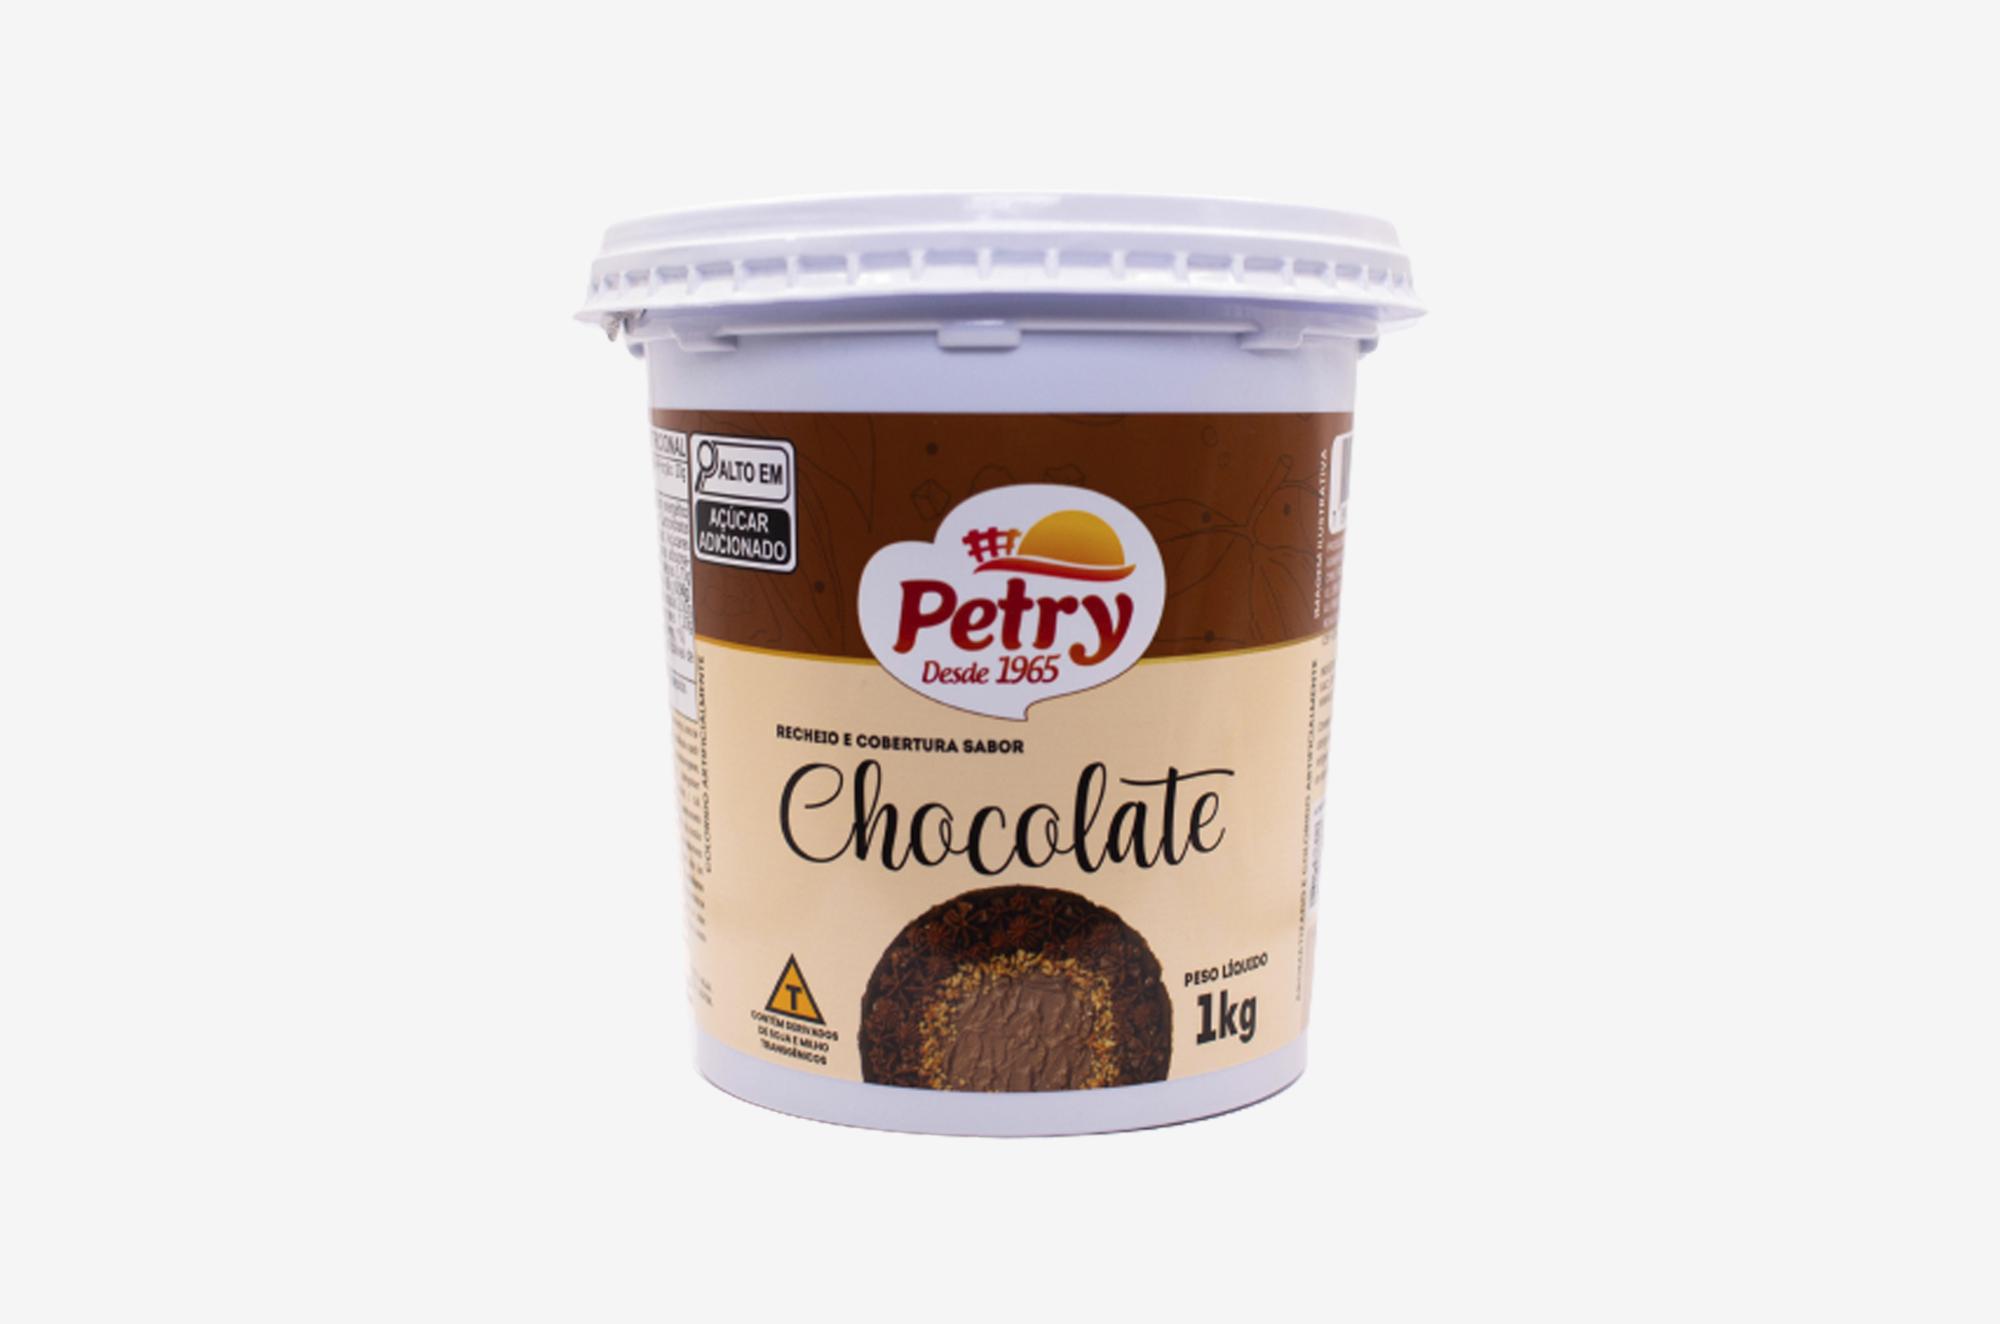 Recheio e cobertura sabor Chocolate Petry 1kg